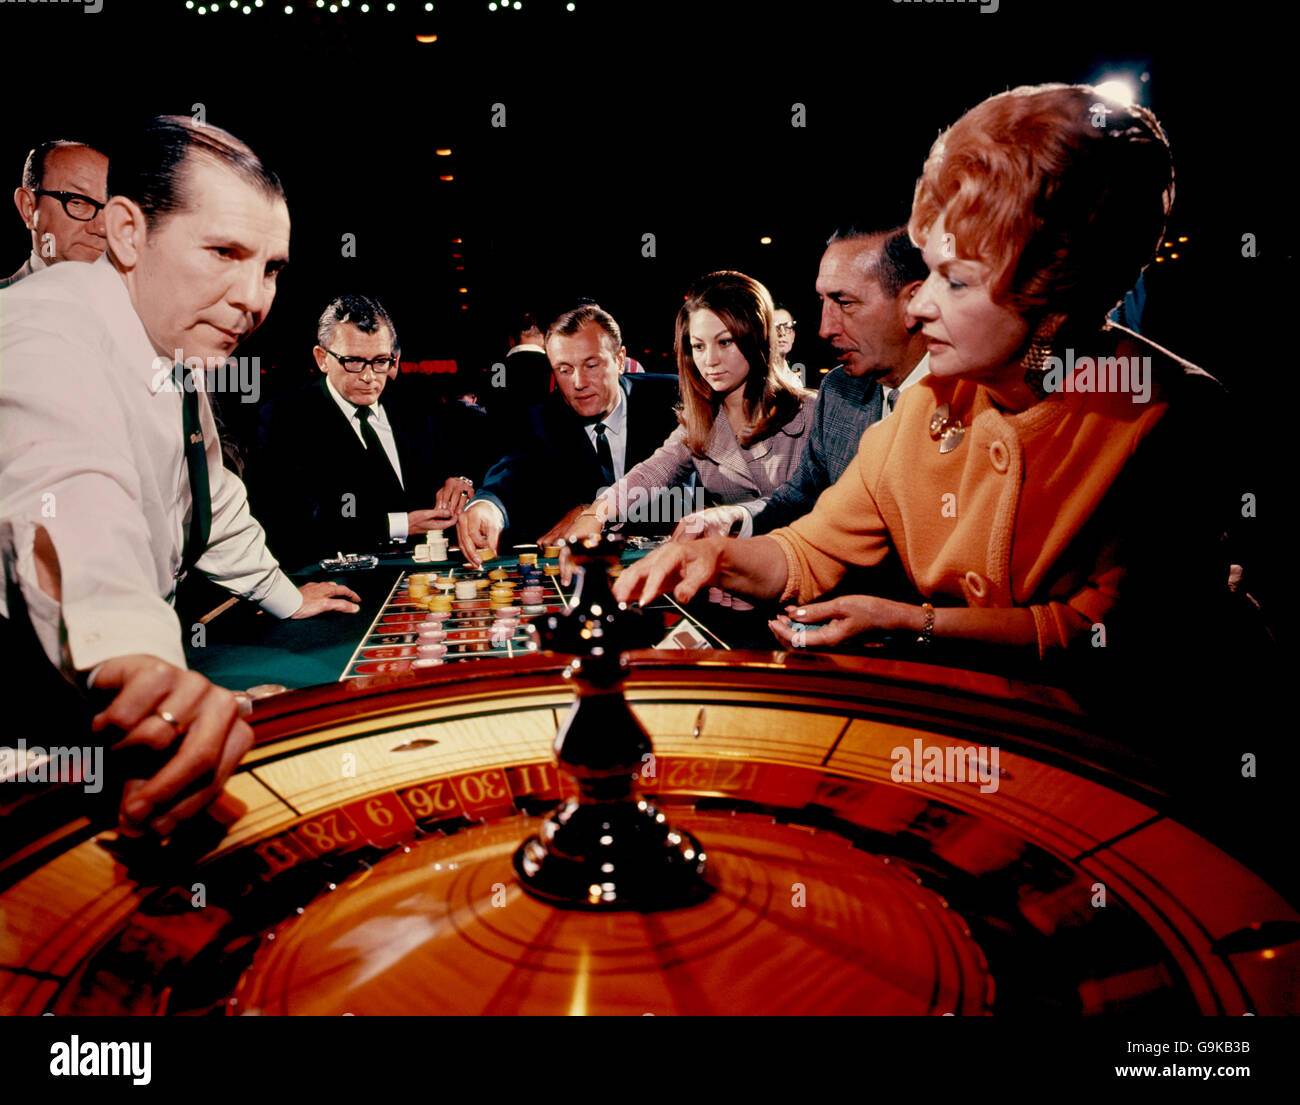 Las Vegas. Glücksspiel in Las Vegas. Stockfoto